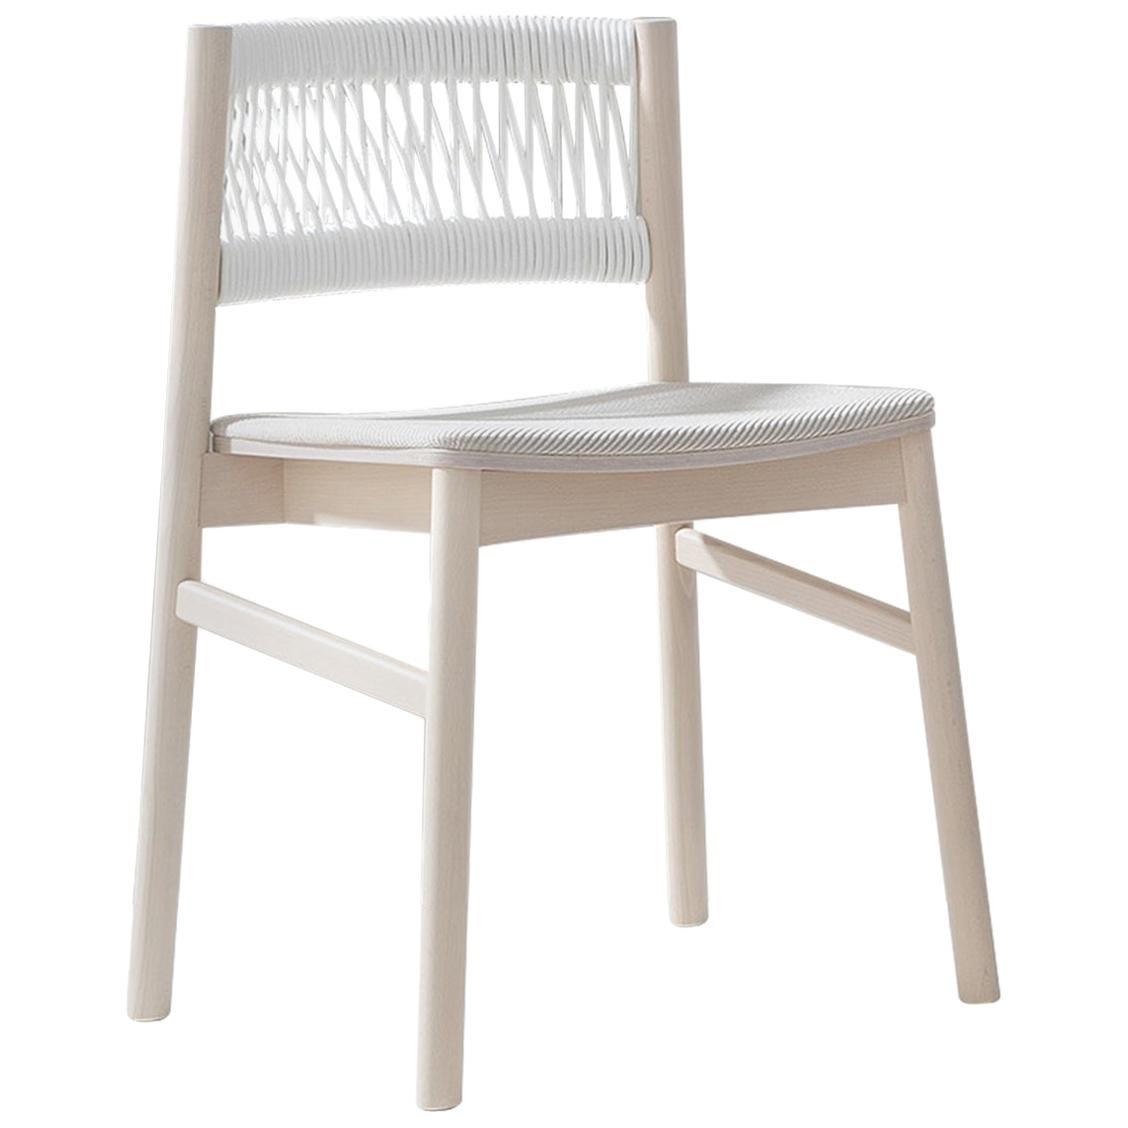 Load 647 Weißer Stuhl von Emilio Nanni